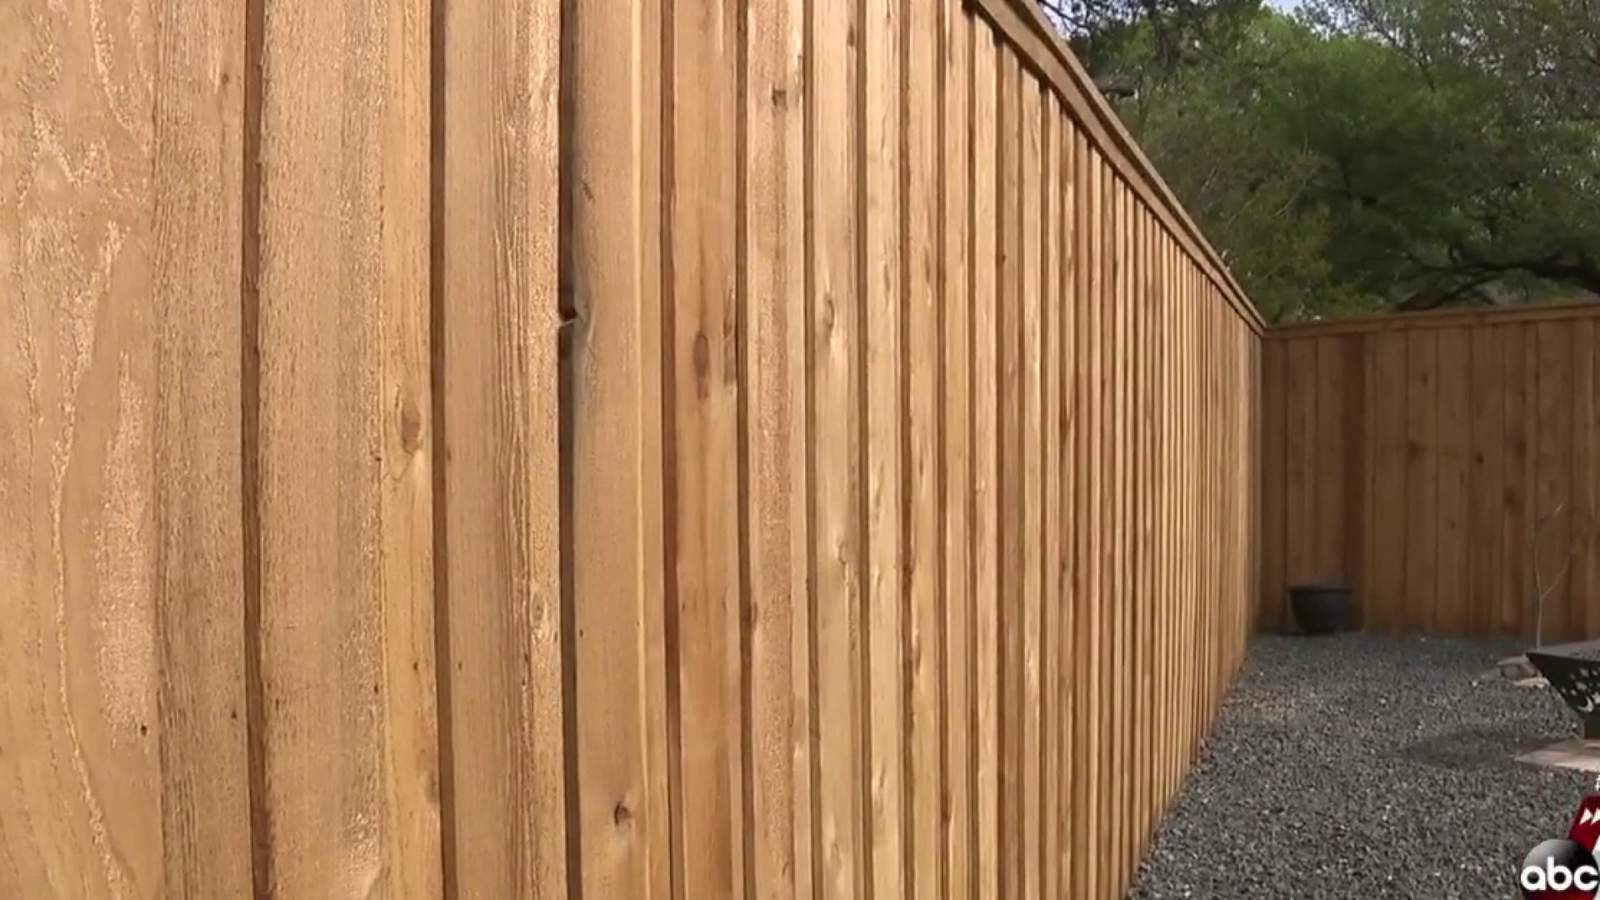 Lumber prices hammering builders in San Antonio